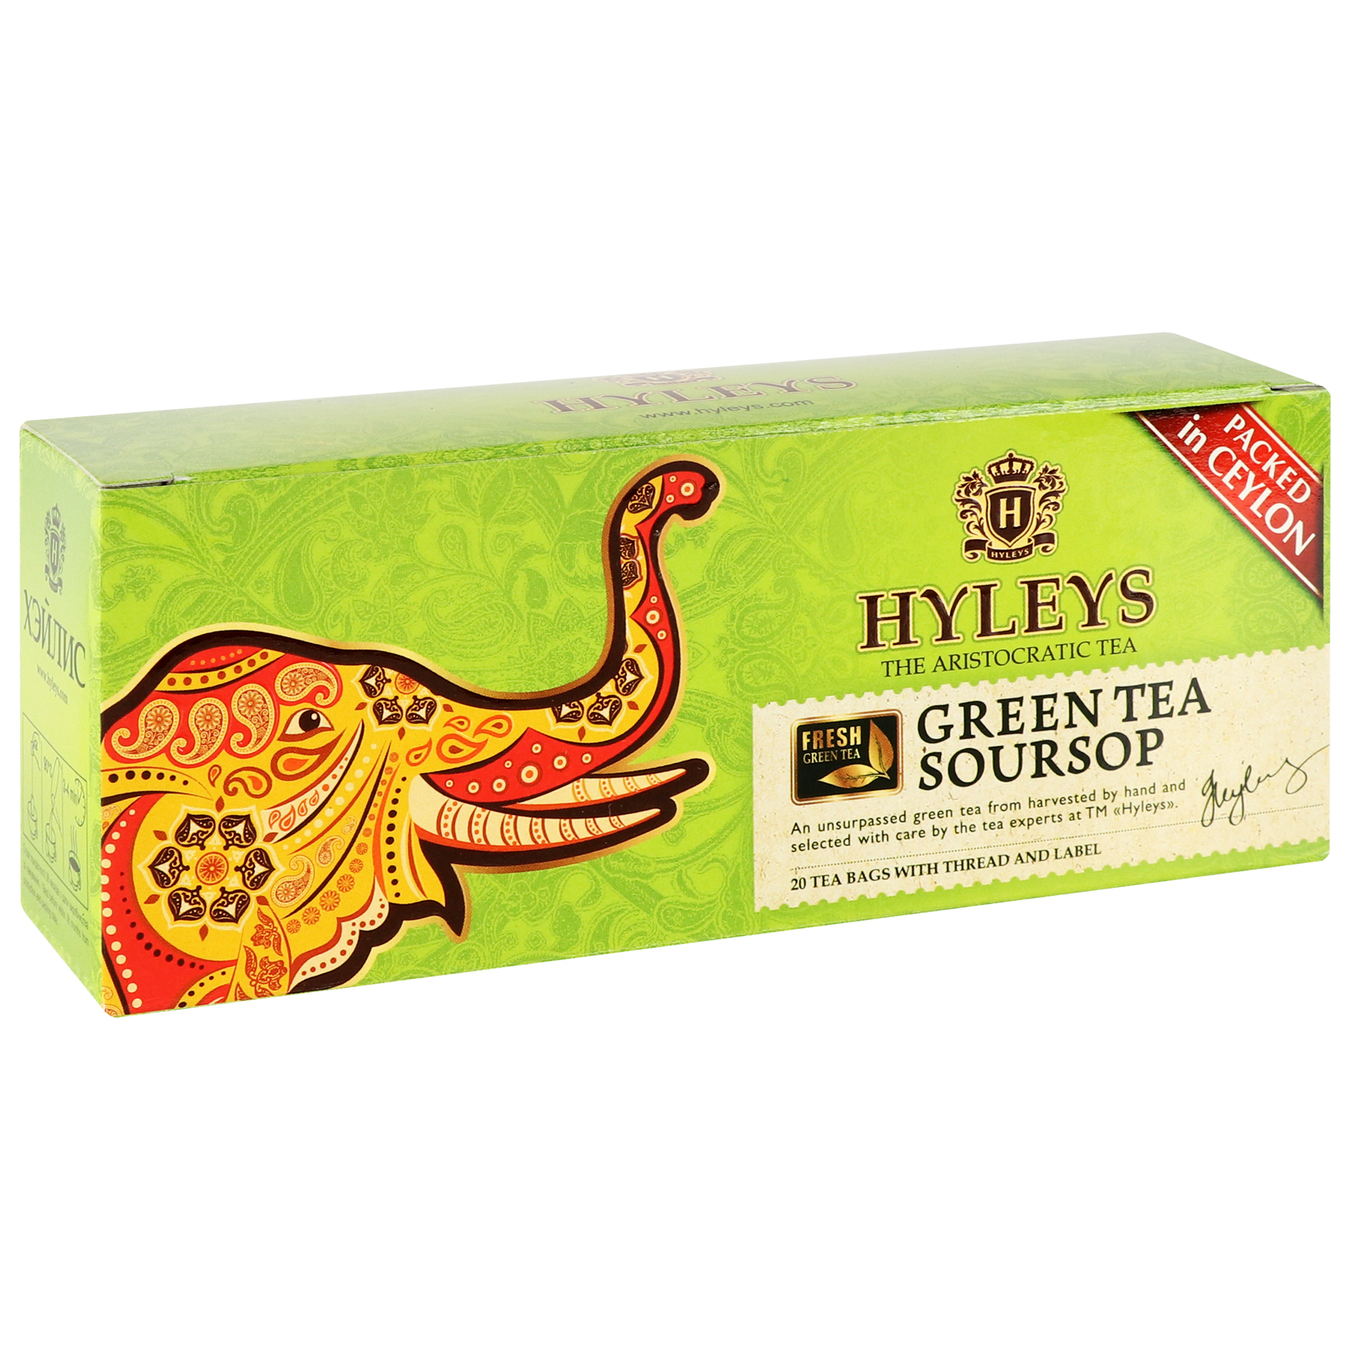 Hyleys green tea with sauce 20pcs x 1.5 g 8